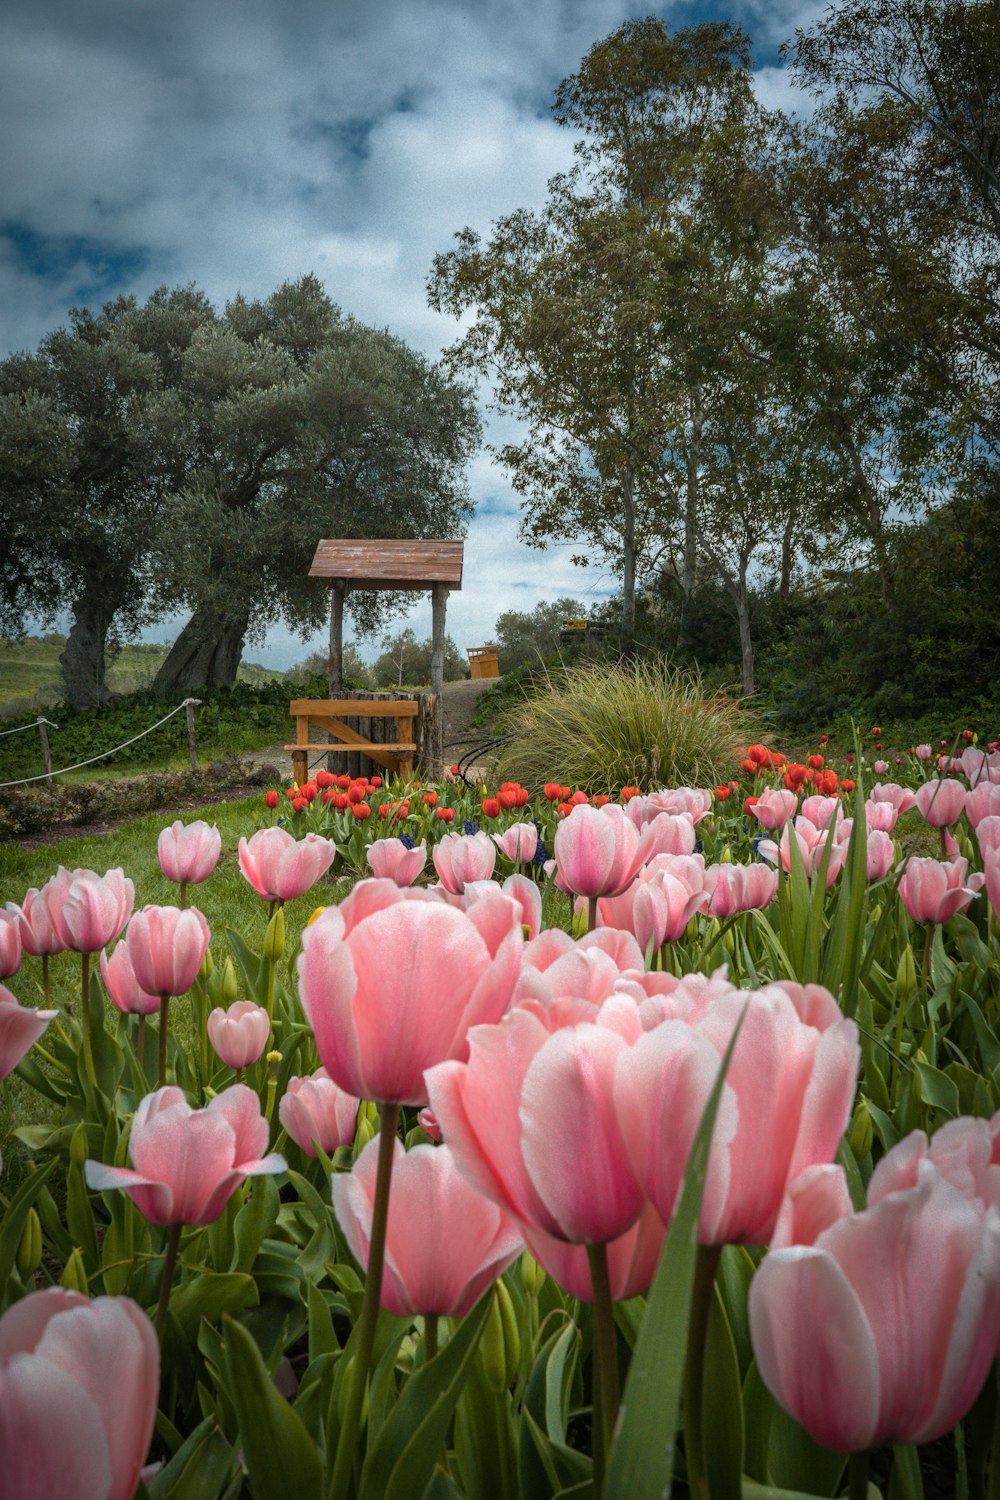 Rosa Tulpen in der Nähe von brauner Holzbank unter blauem Himmel während des Tages